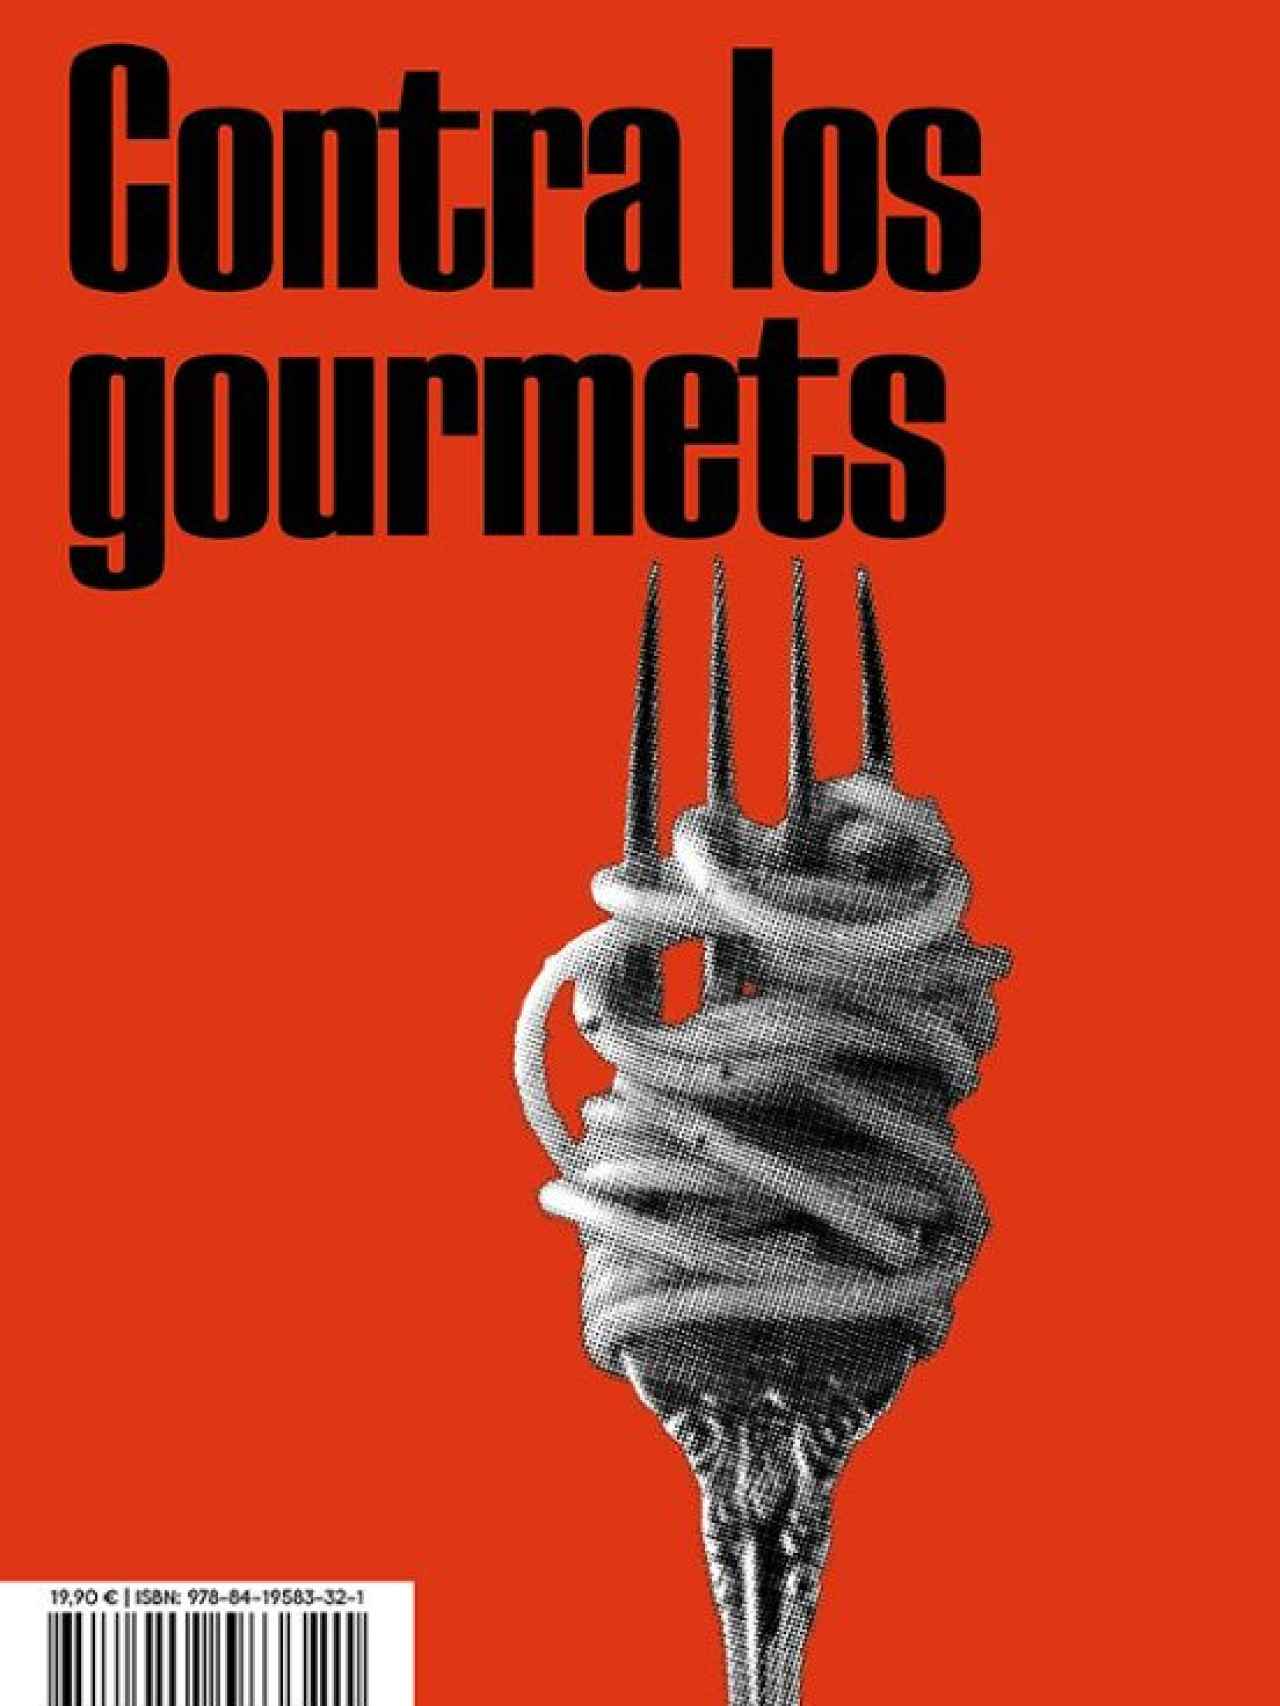 'Contra los gourmets'